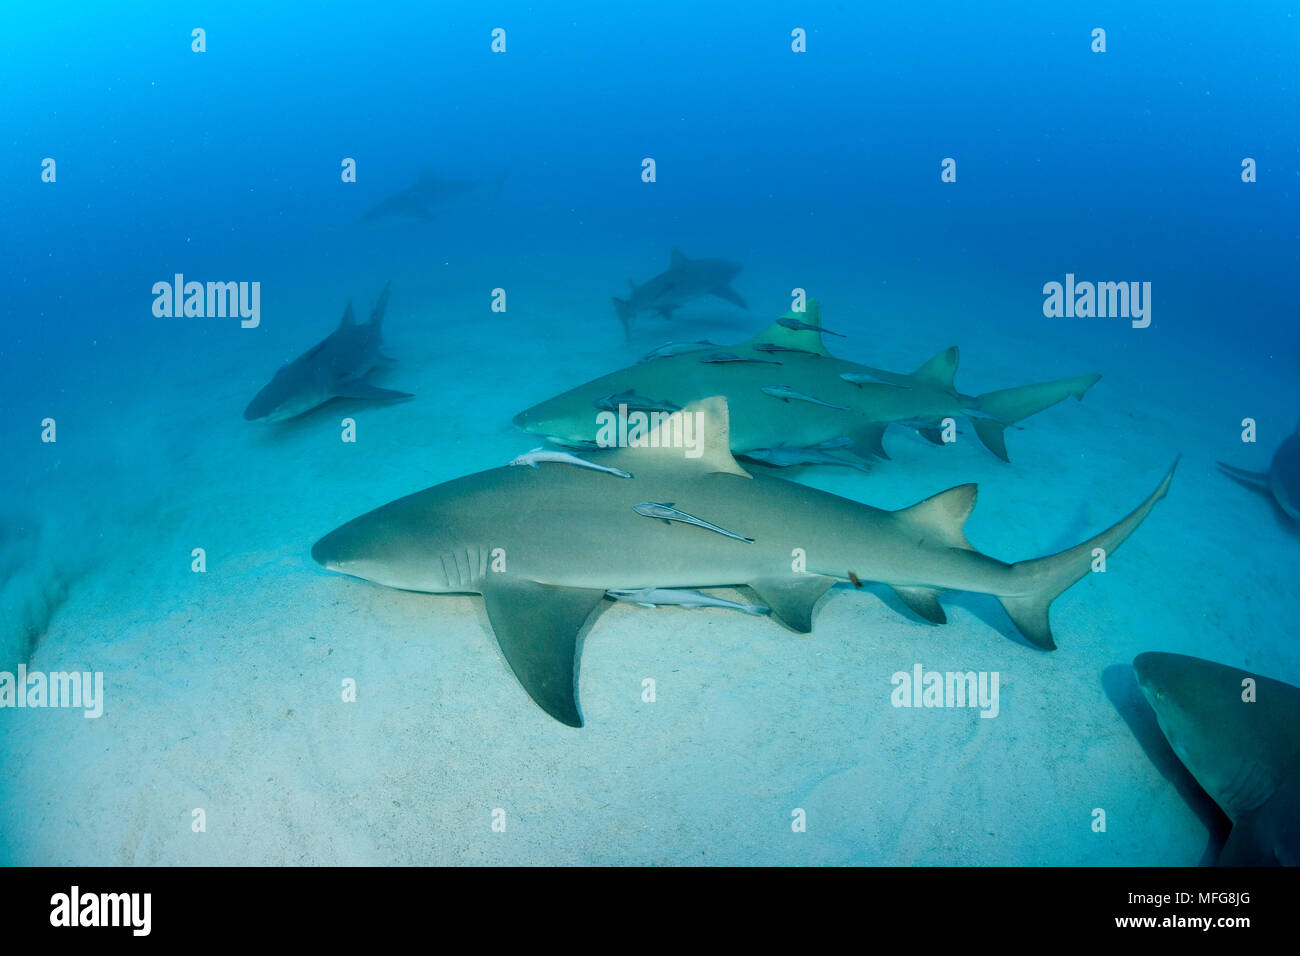 Le requin, Negaprion brevirostris, accompagnant de Remora ou suckerfish, Nord des Bahamas, mer des Caraïbes, Océan Atlantique Banque D'Images